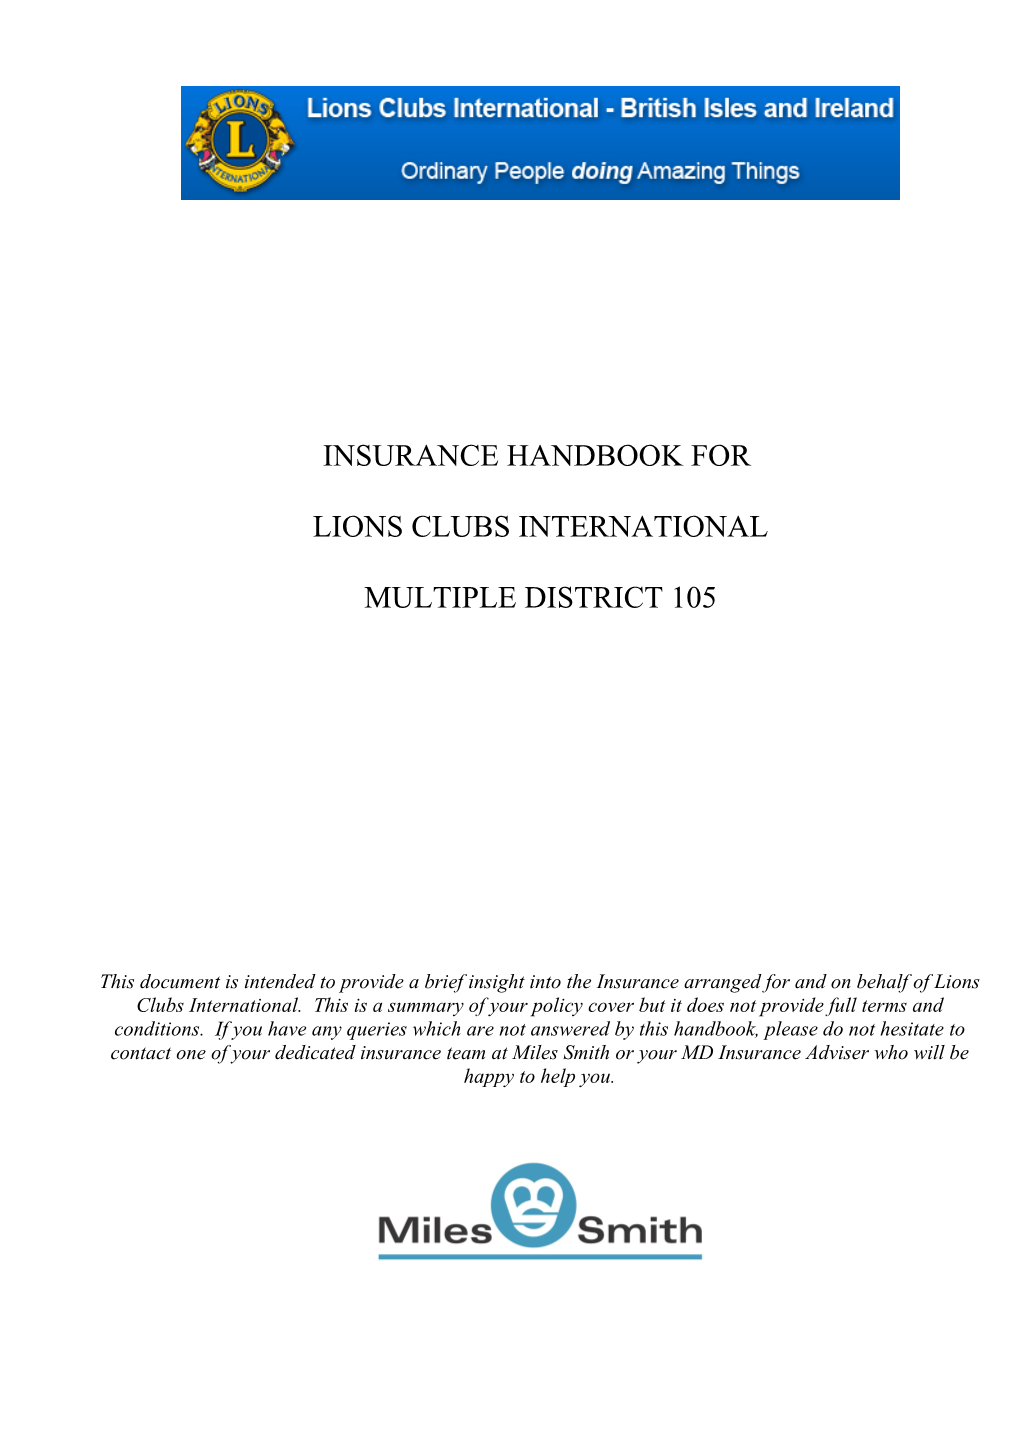 Insurance Handbook For